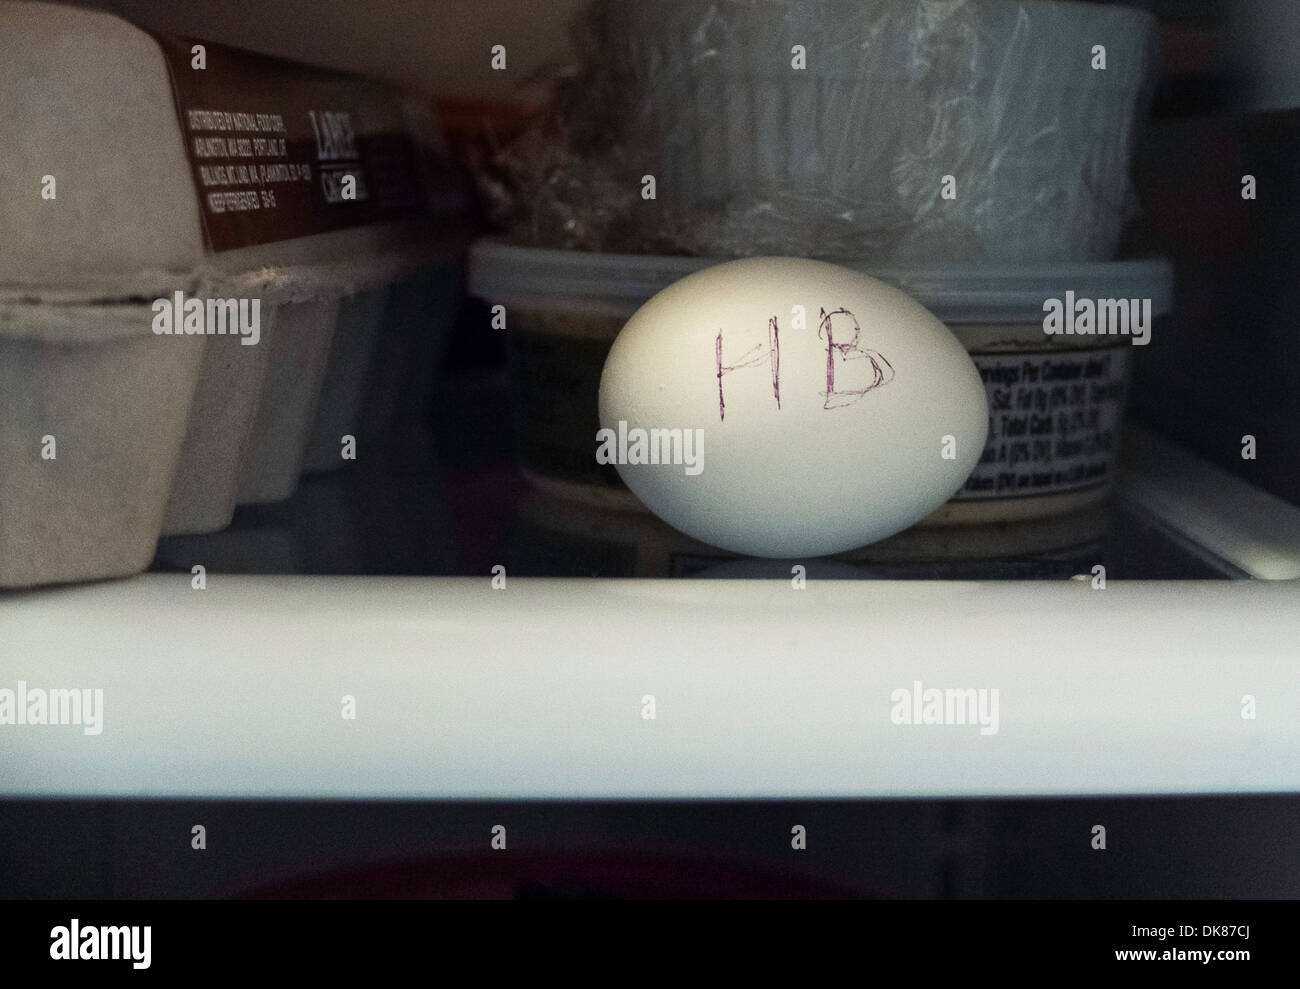 Solo uova sode, denominata HB sul ripiano in frigorifero accanto al cartone di uova Foto Stock